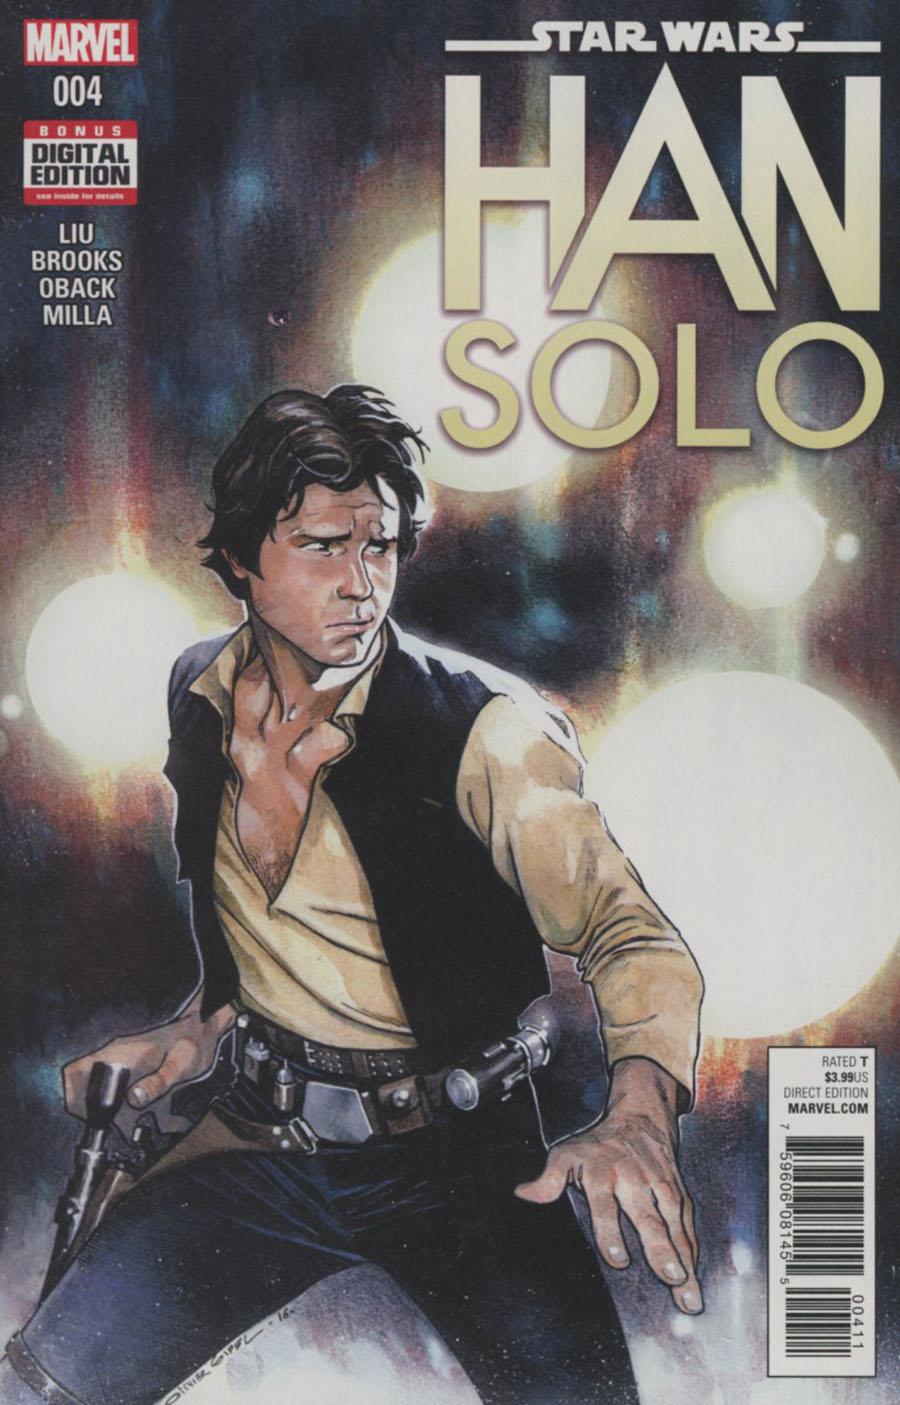 Star Wars Han Solo Vol. 1 #4